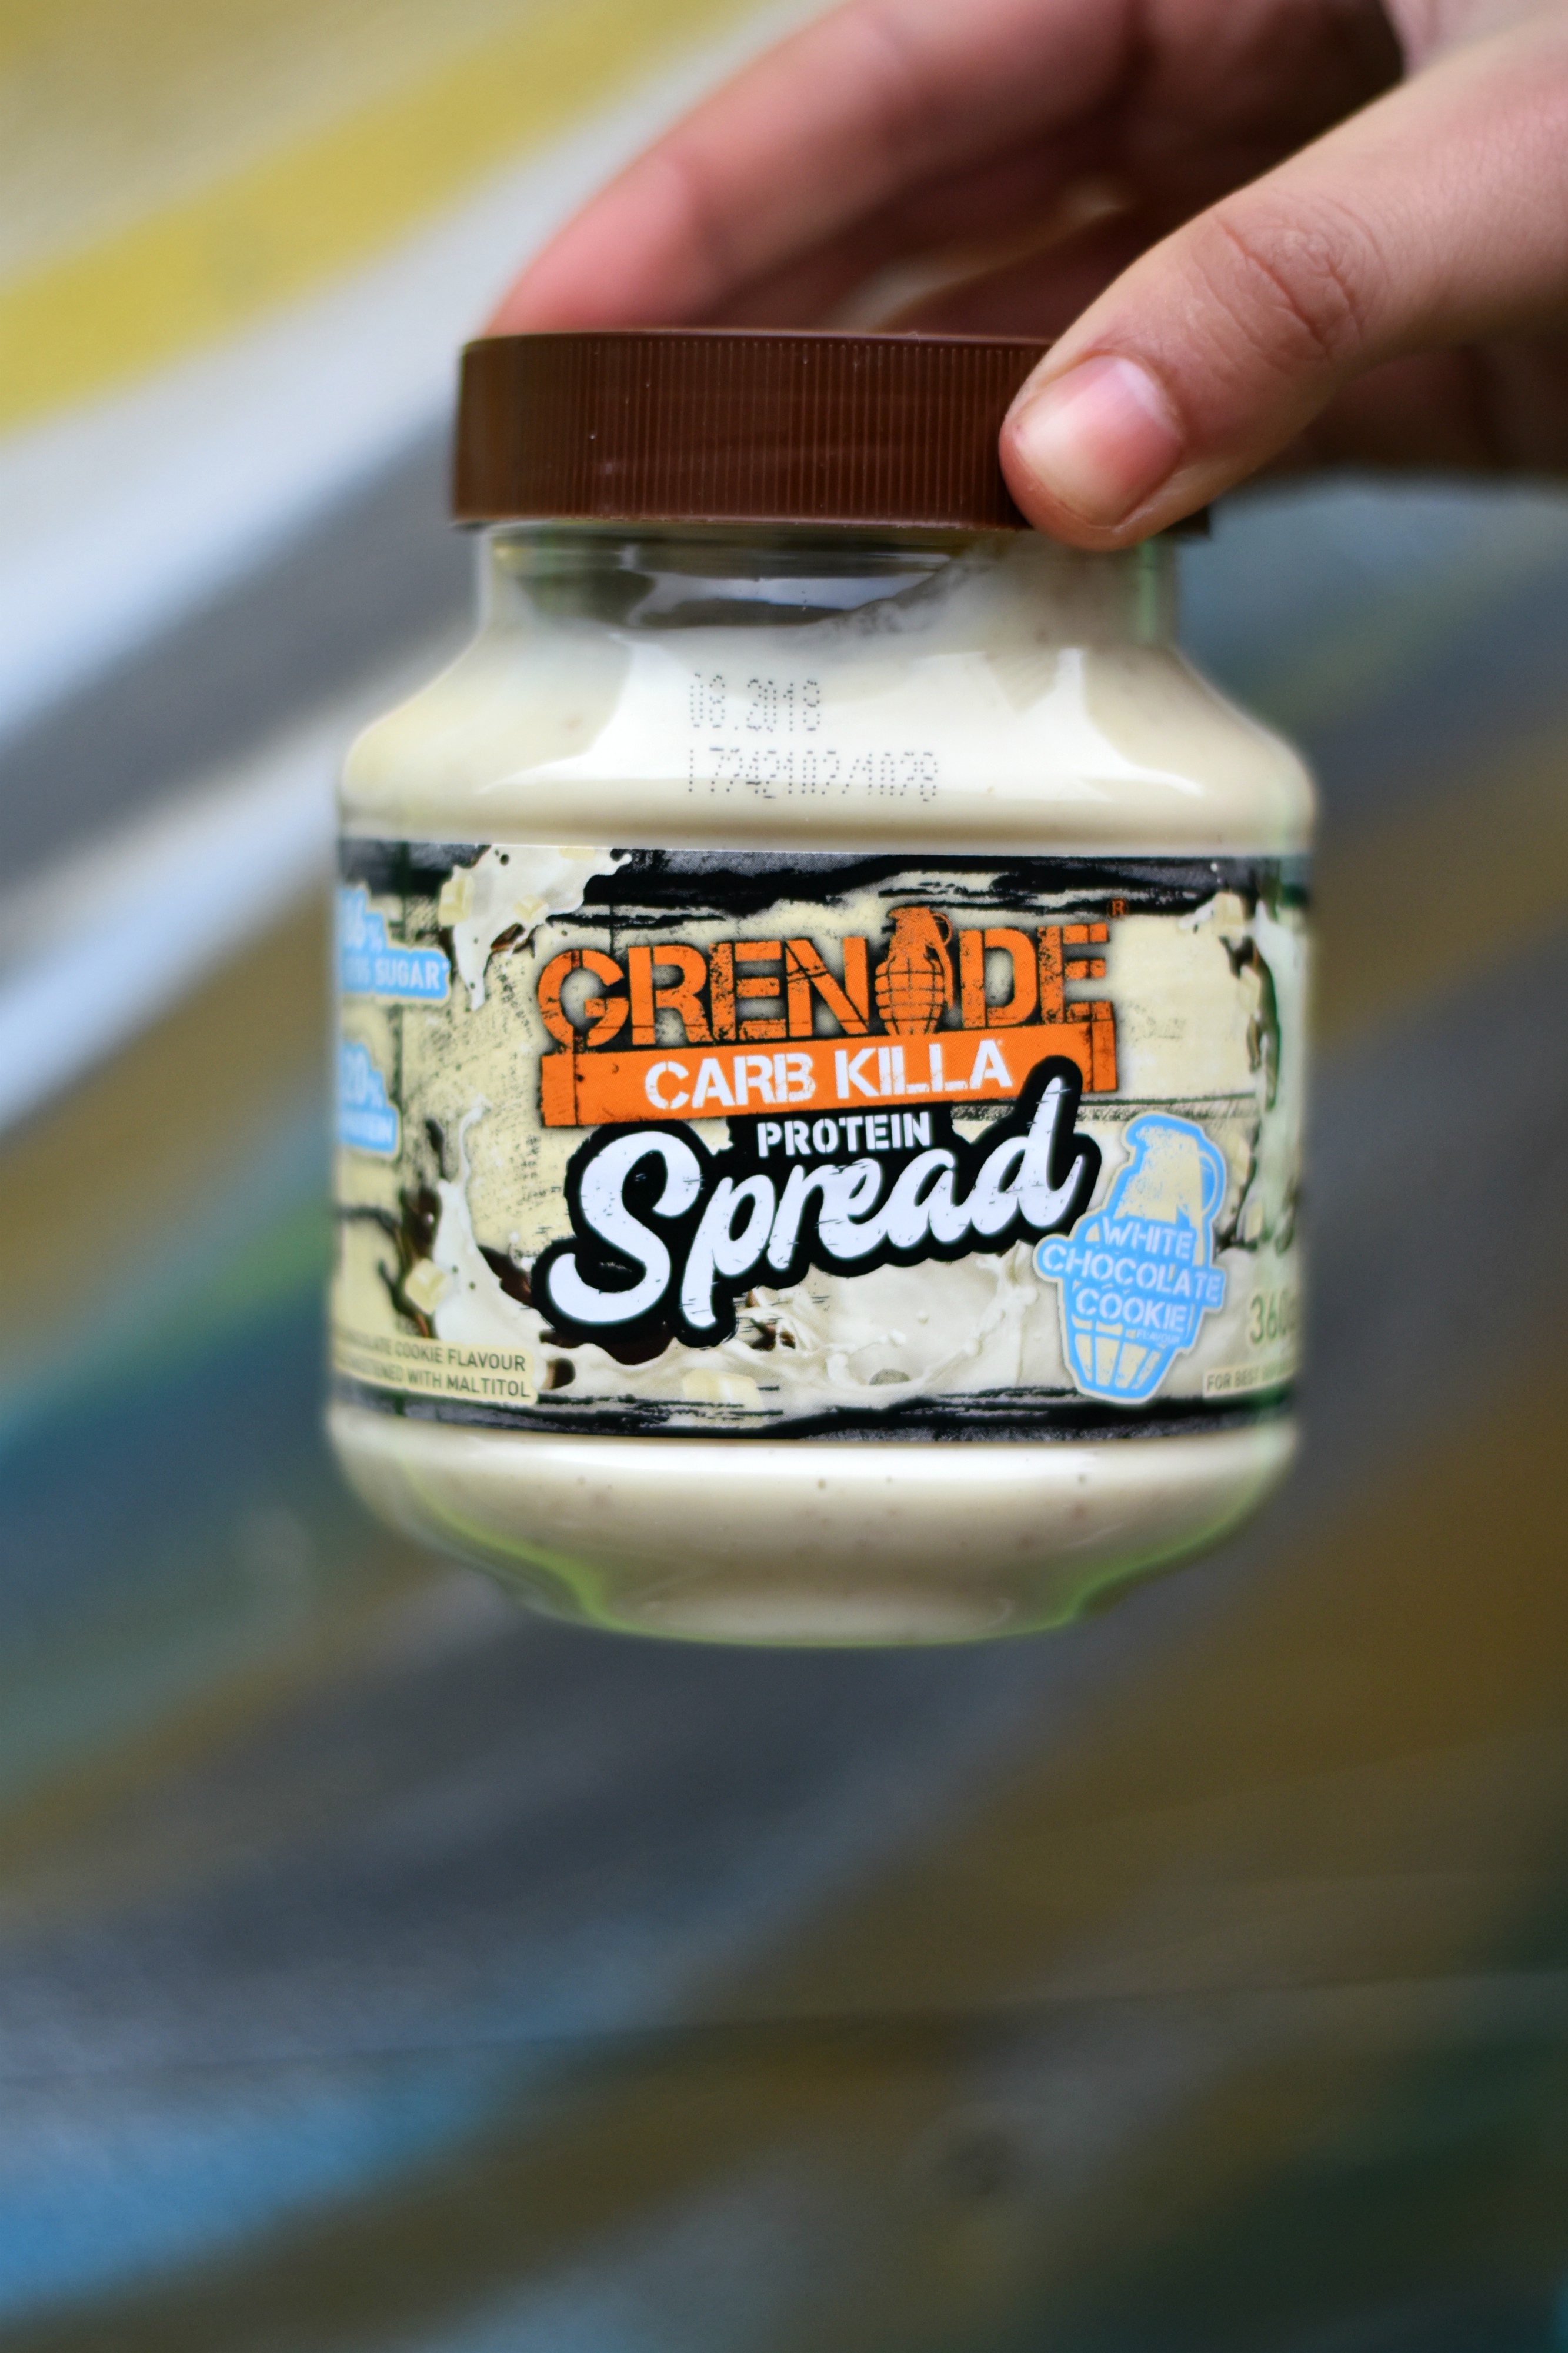 <img src="ana.jpg" alt="ana grenade white chocolate spread"> 